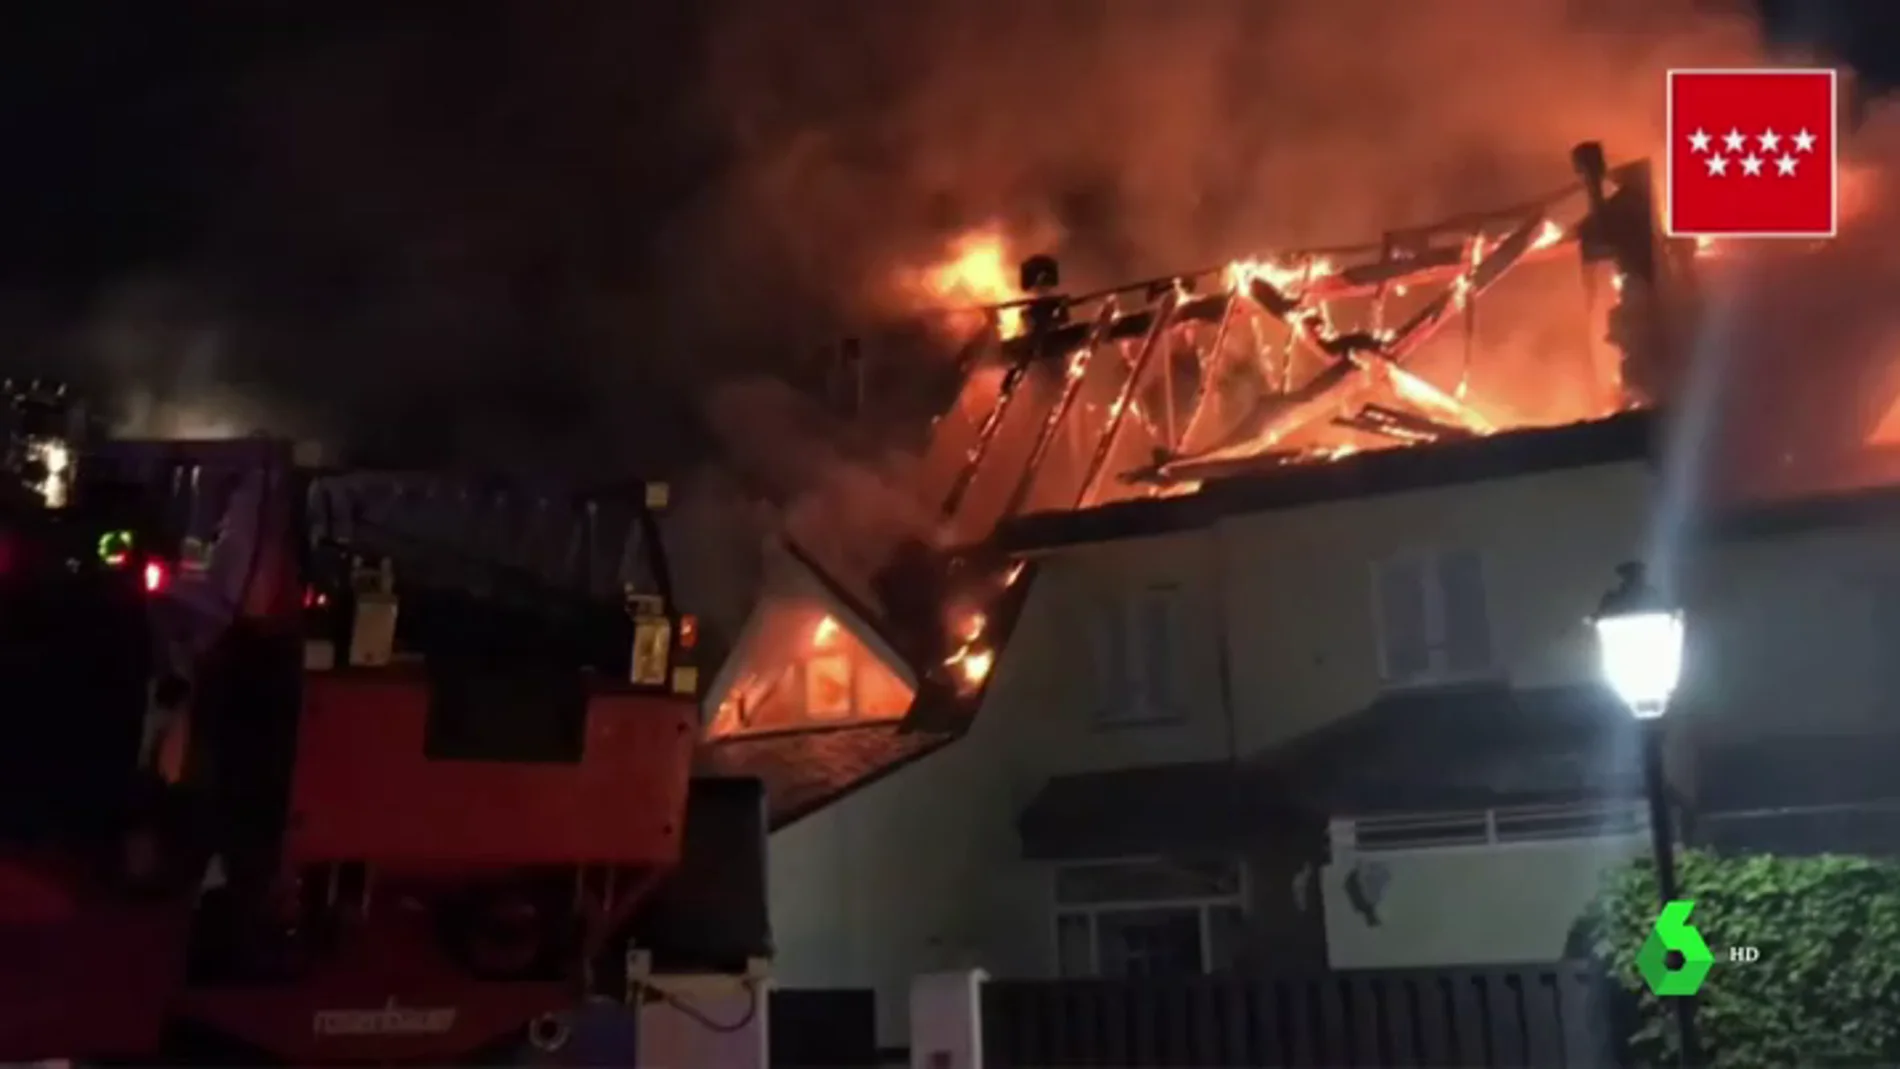 Un incendio provoca grandes daños en seis viviendas en Collado Villalba 